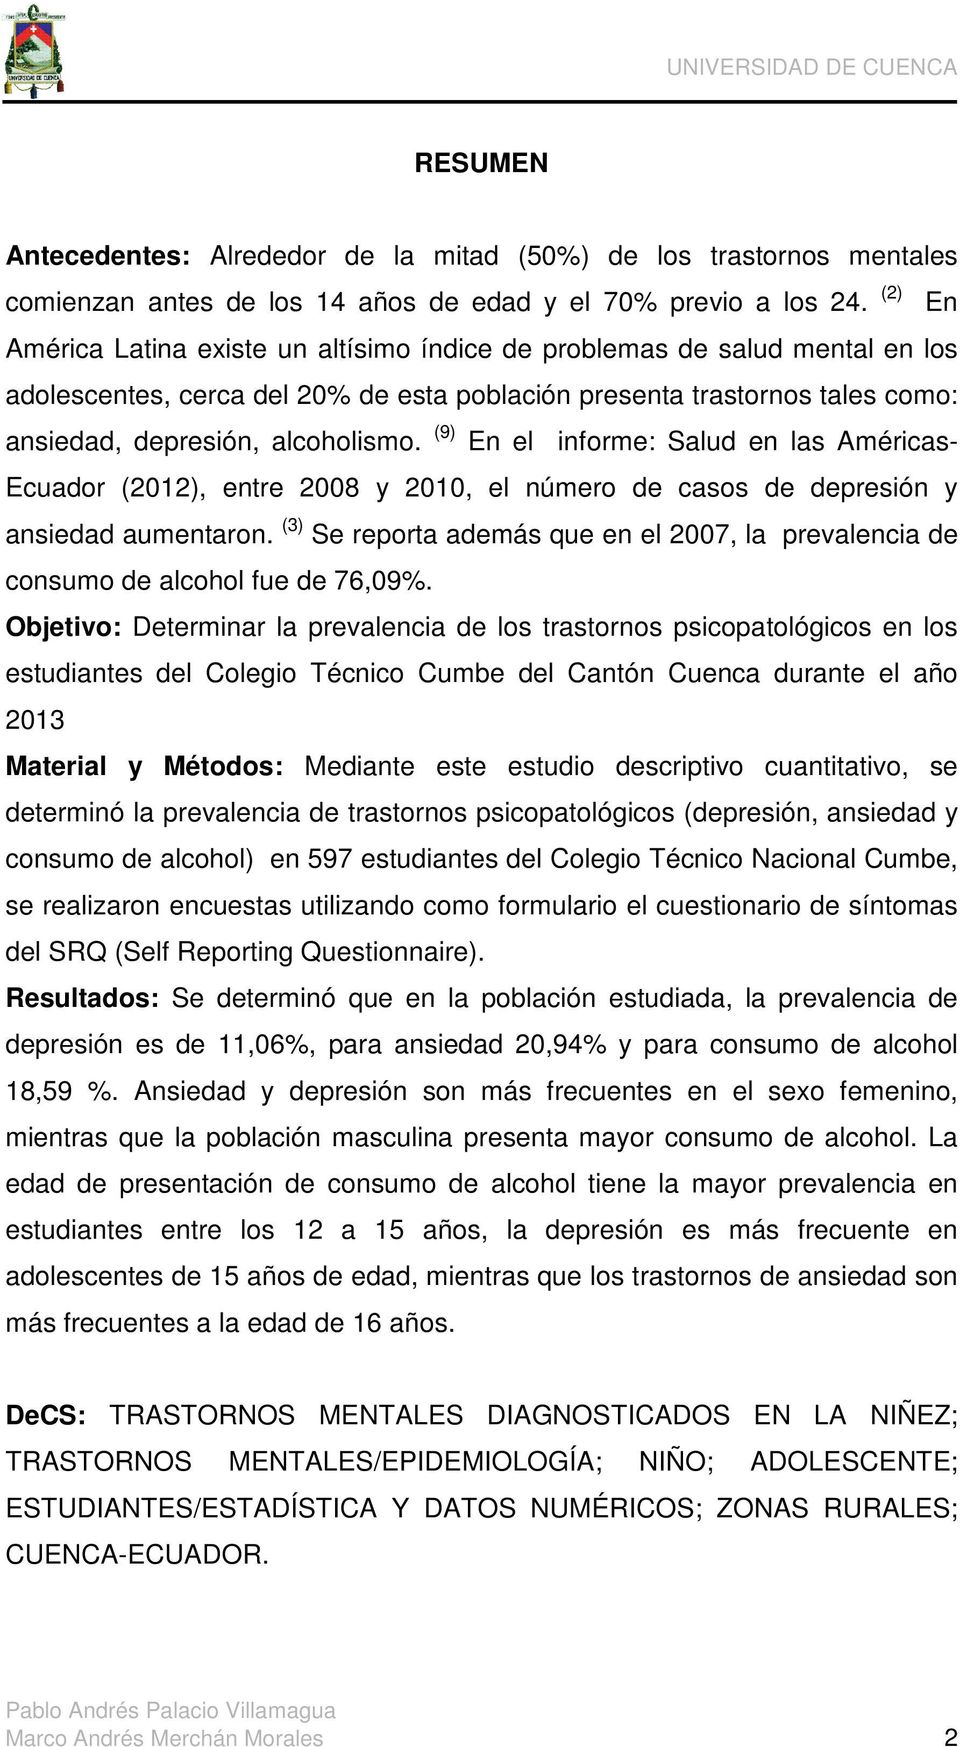 (9) En el informe: Salud en las Américas- Ecuador (2012), entre 2008 y 2010, el número de casos de depresión y ansiedad aumentaron.